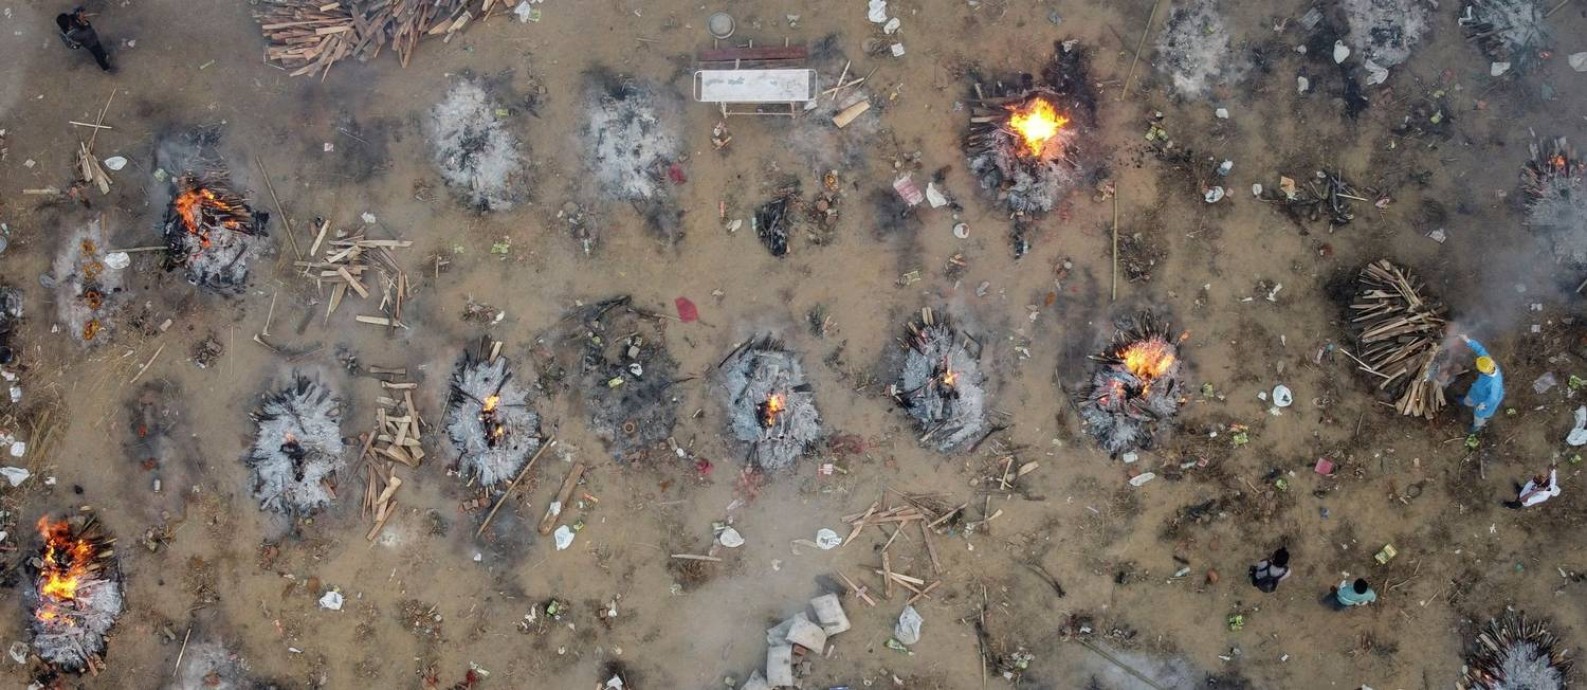 Cremação em massa de vítimas da Covid-19 em Nova Delhi Foto: DANISH SIDDIQUI / REUTERS